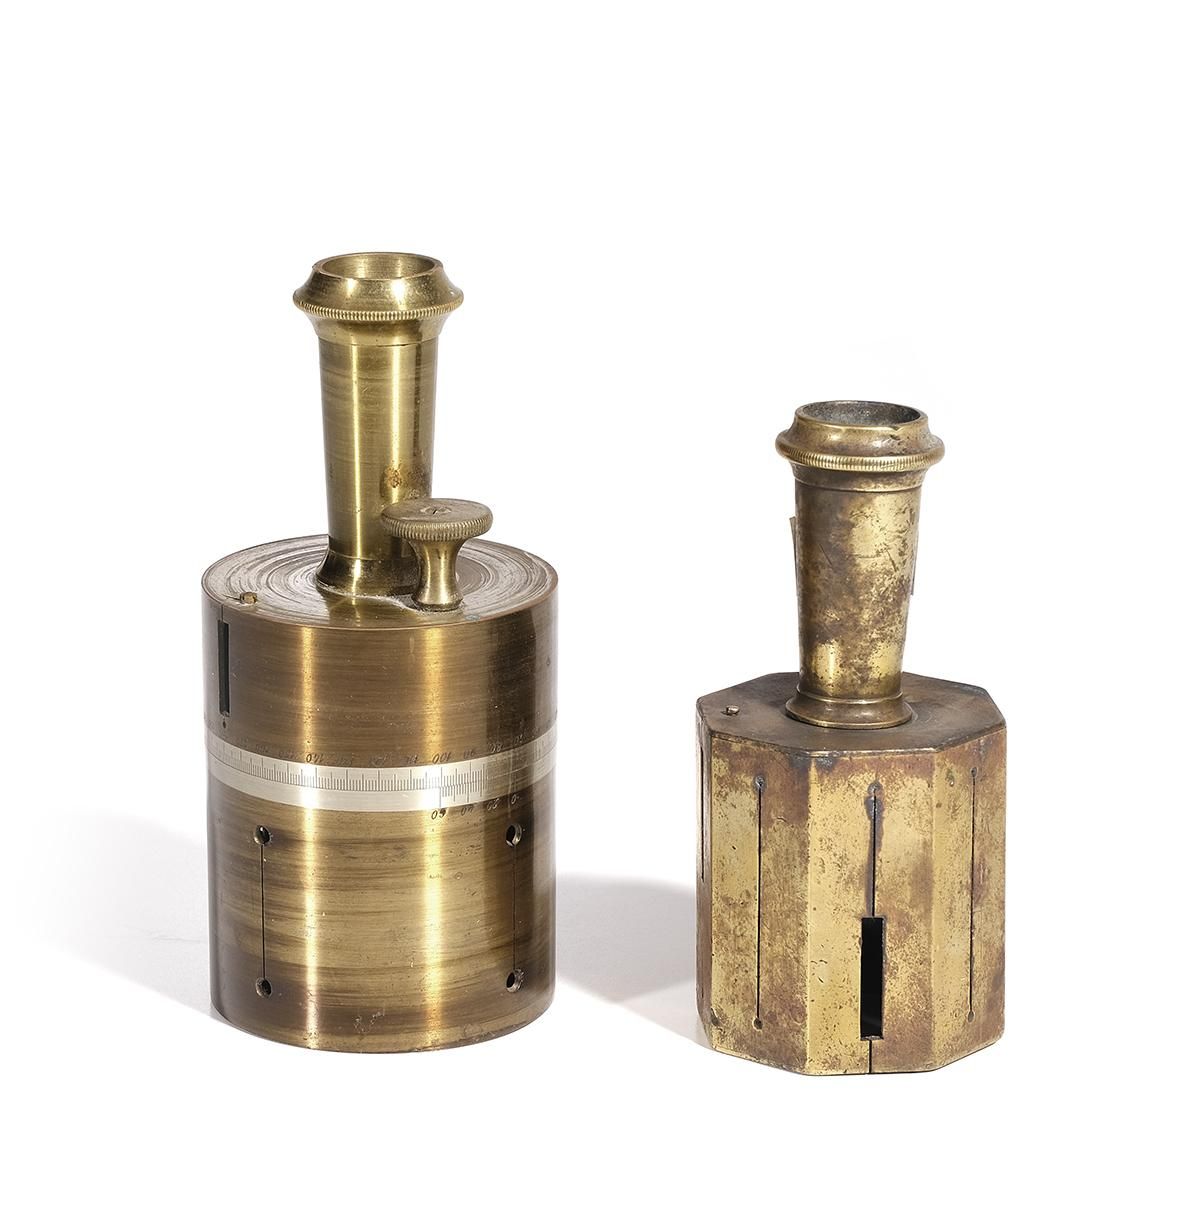 Null 青铜制的受电弓和测量仪方块。20世纪上半叶

高度：14.5厘米和12厘米。
他们有缺点。